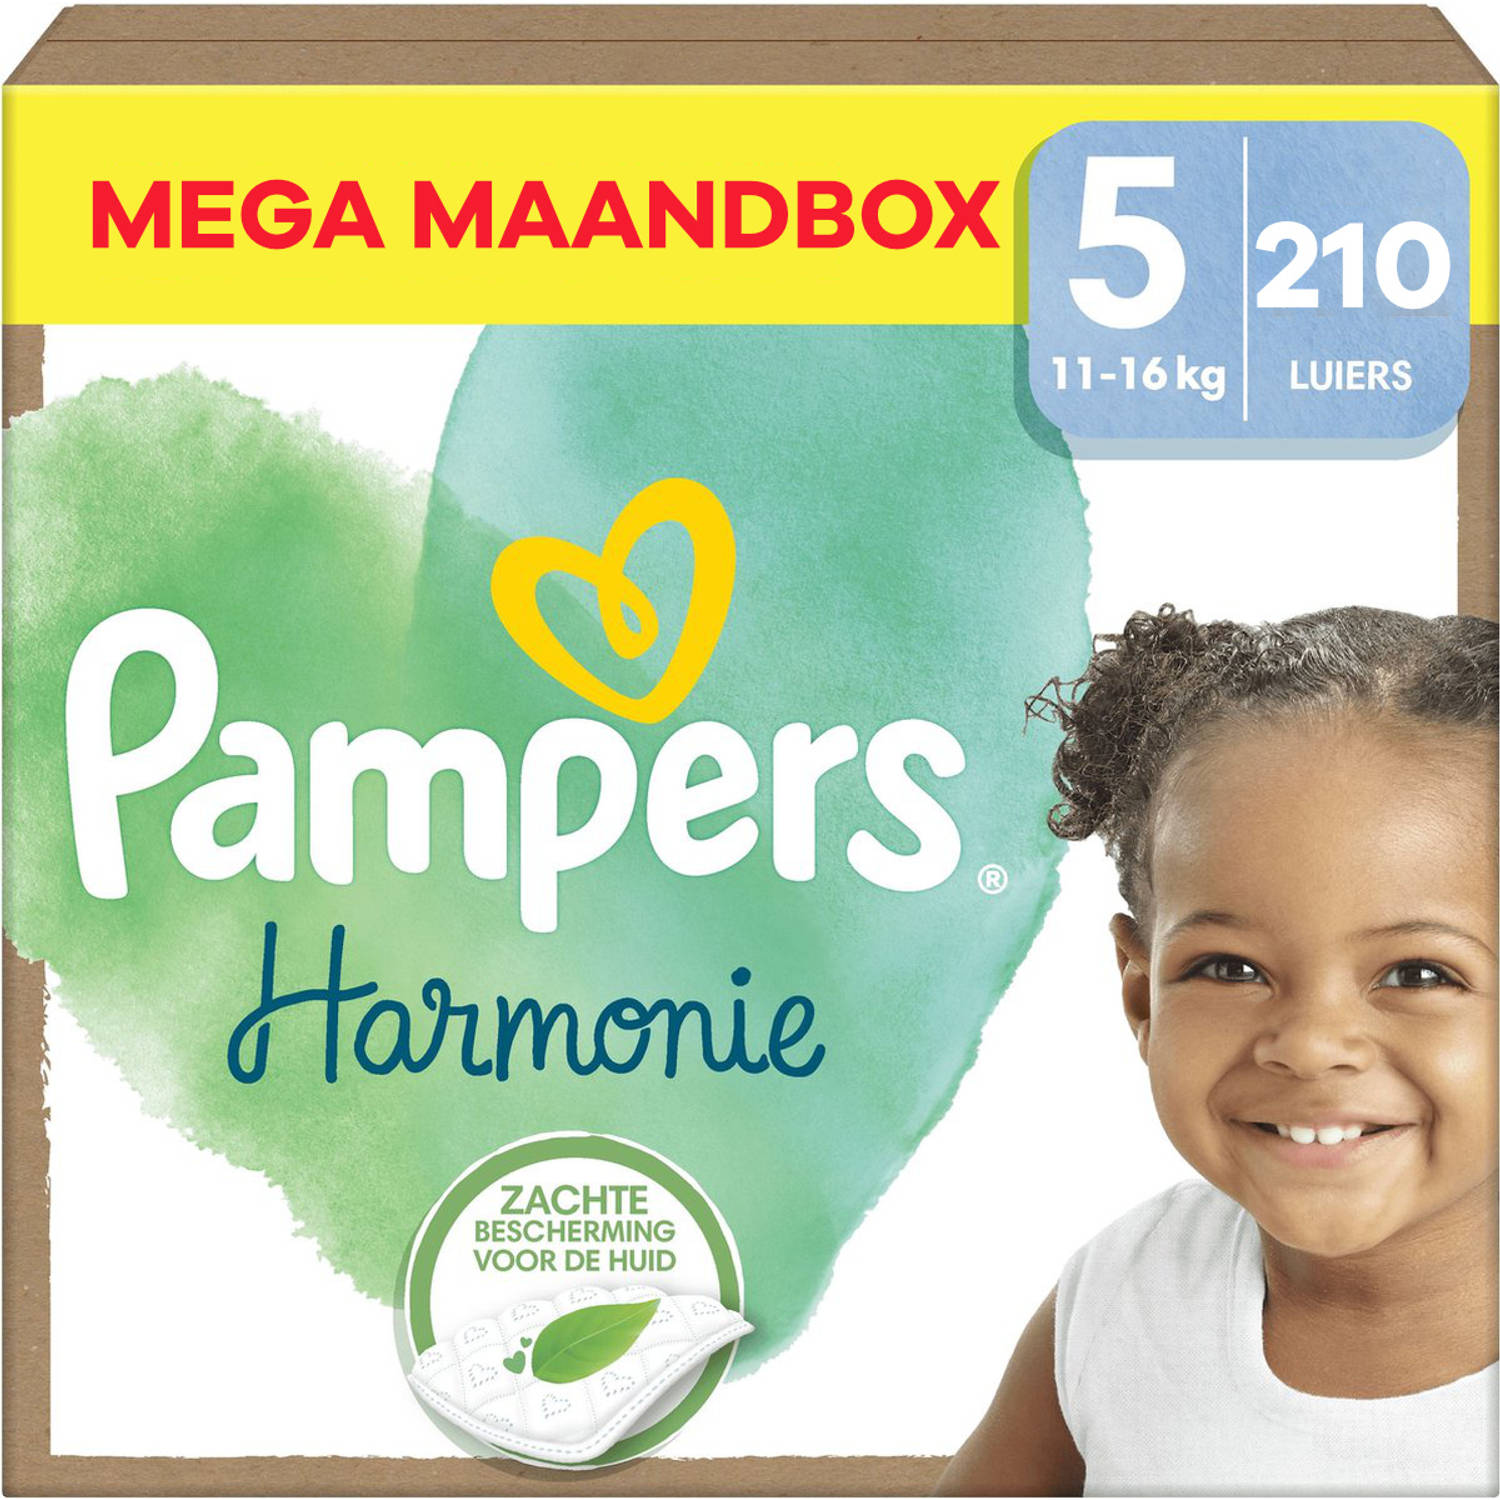 Pampers Harmonie Maat 5 Mega Maandbox 210 stuks 11-16 KG